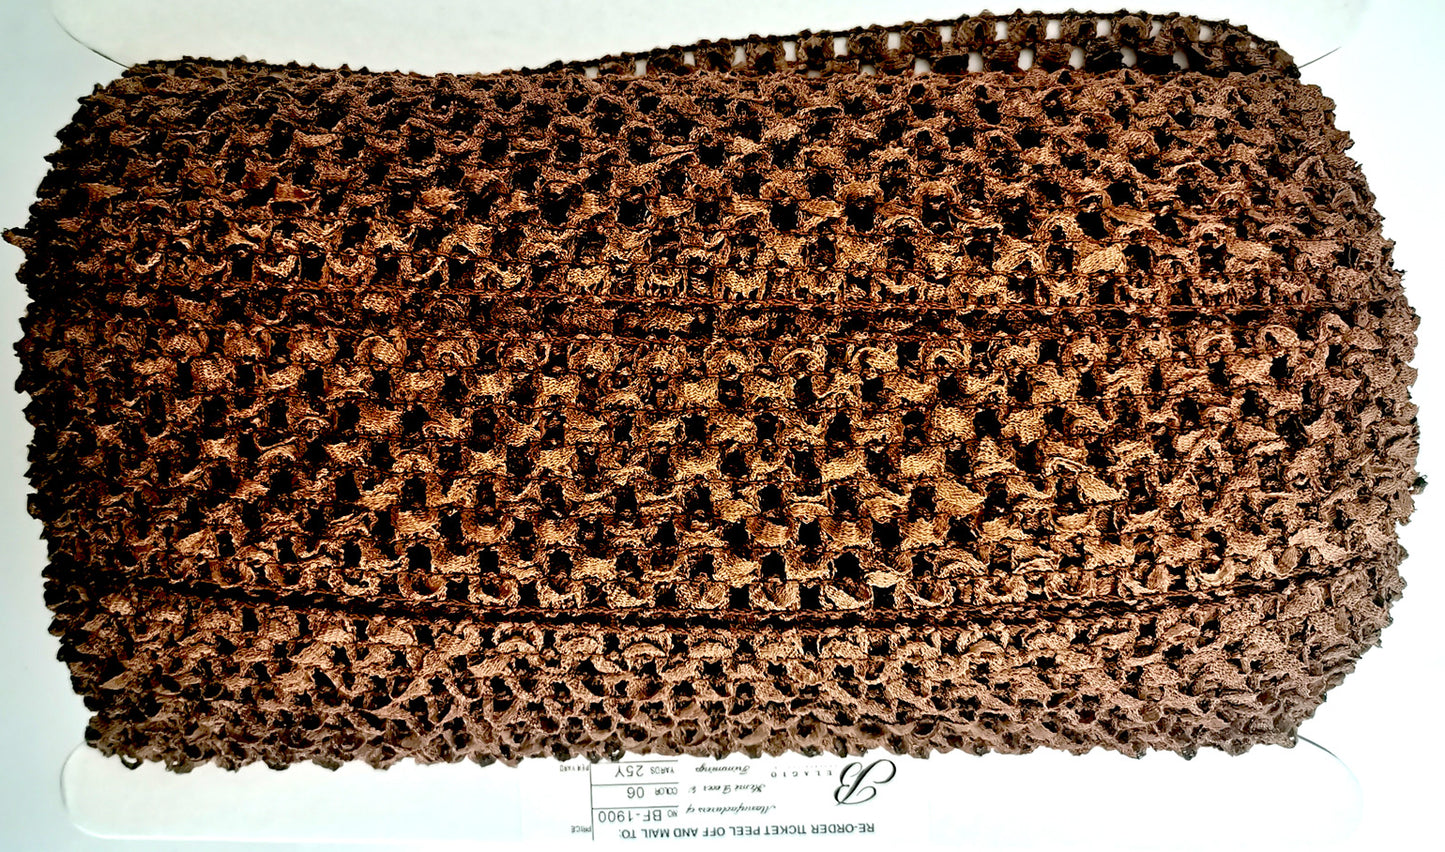 Crochet Stretch Trim - 9" Width (10 YDS)-BF-1903-06